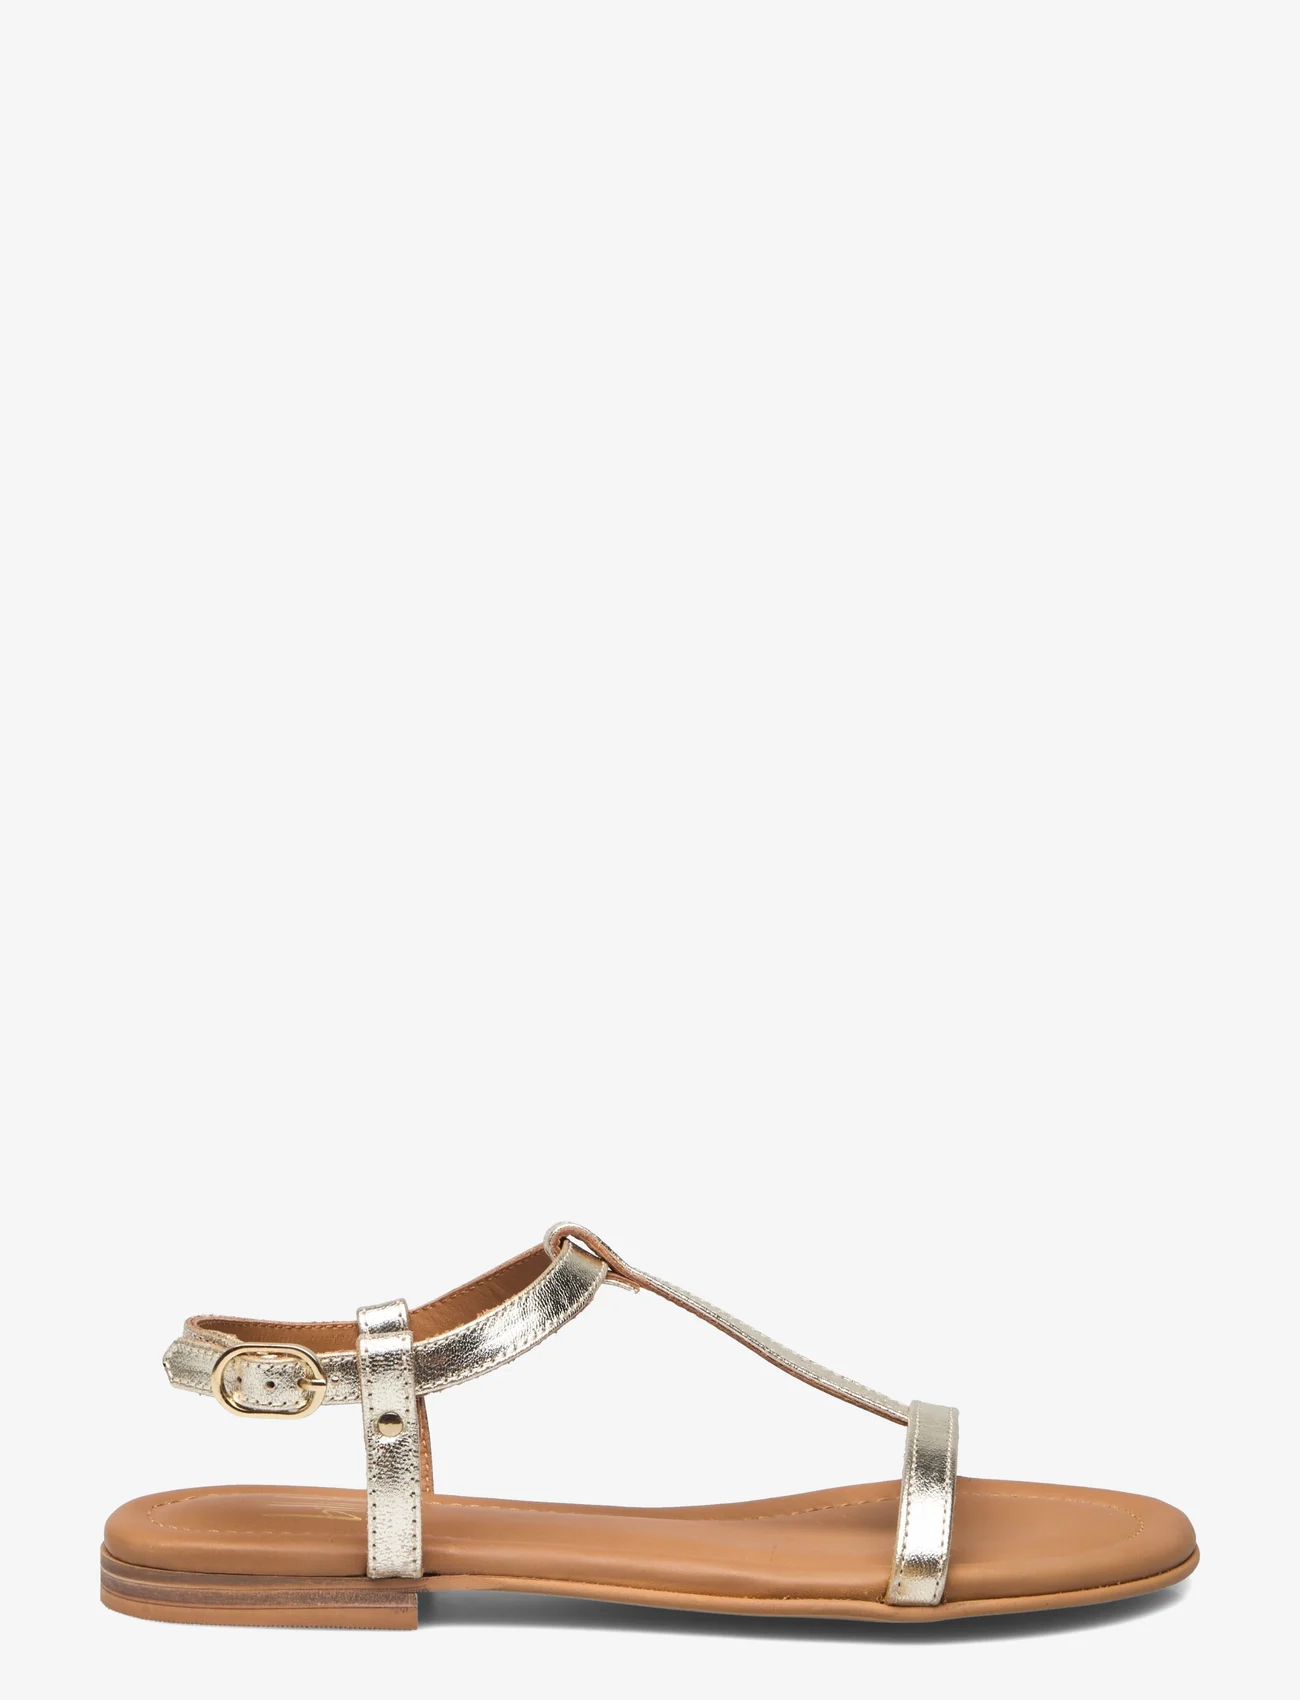 Billi Bi - Sandals - flat sandals - gold nappa - 1